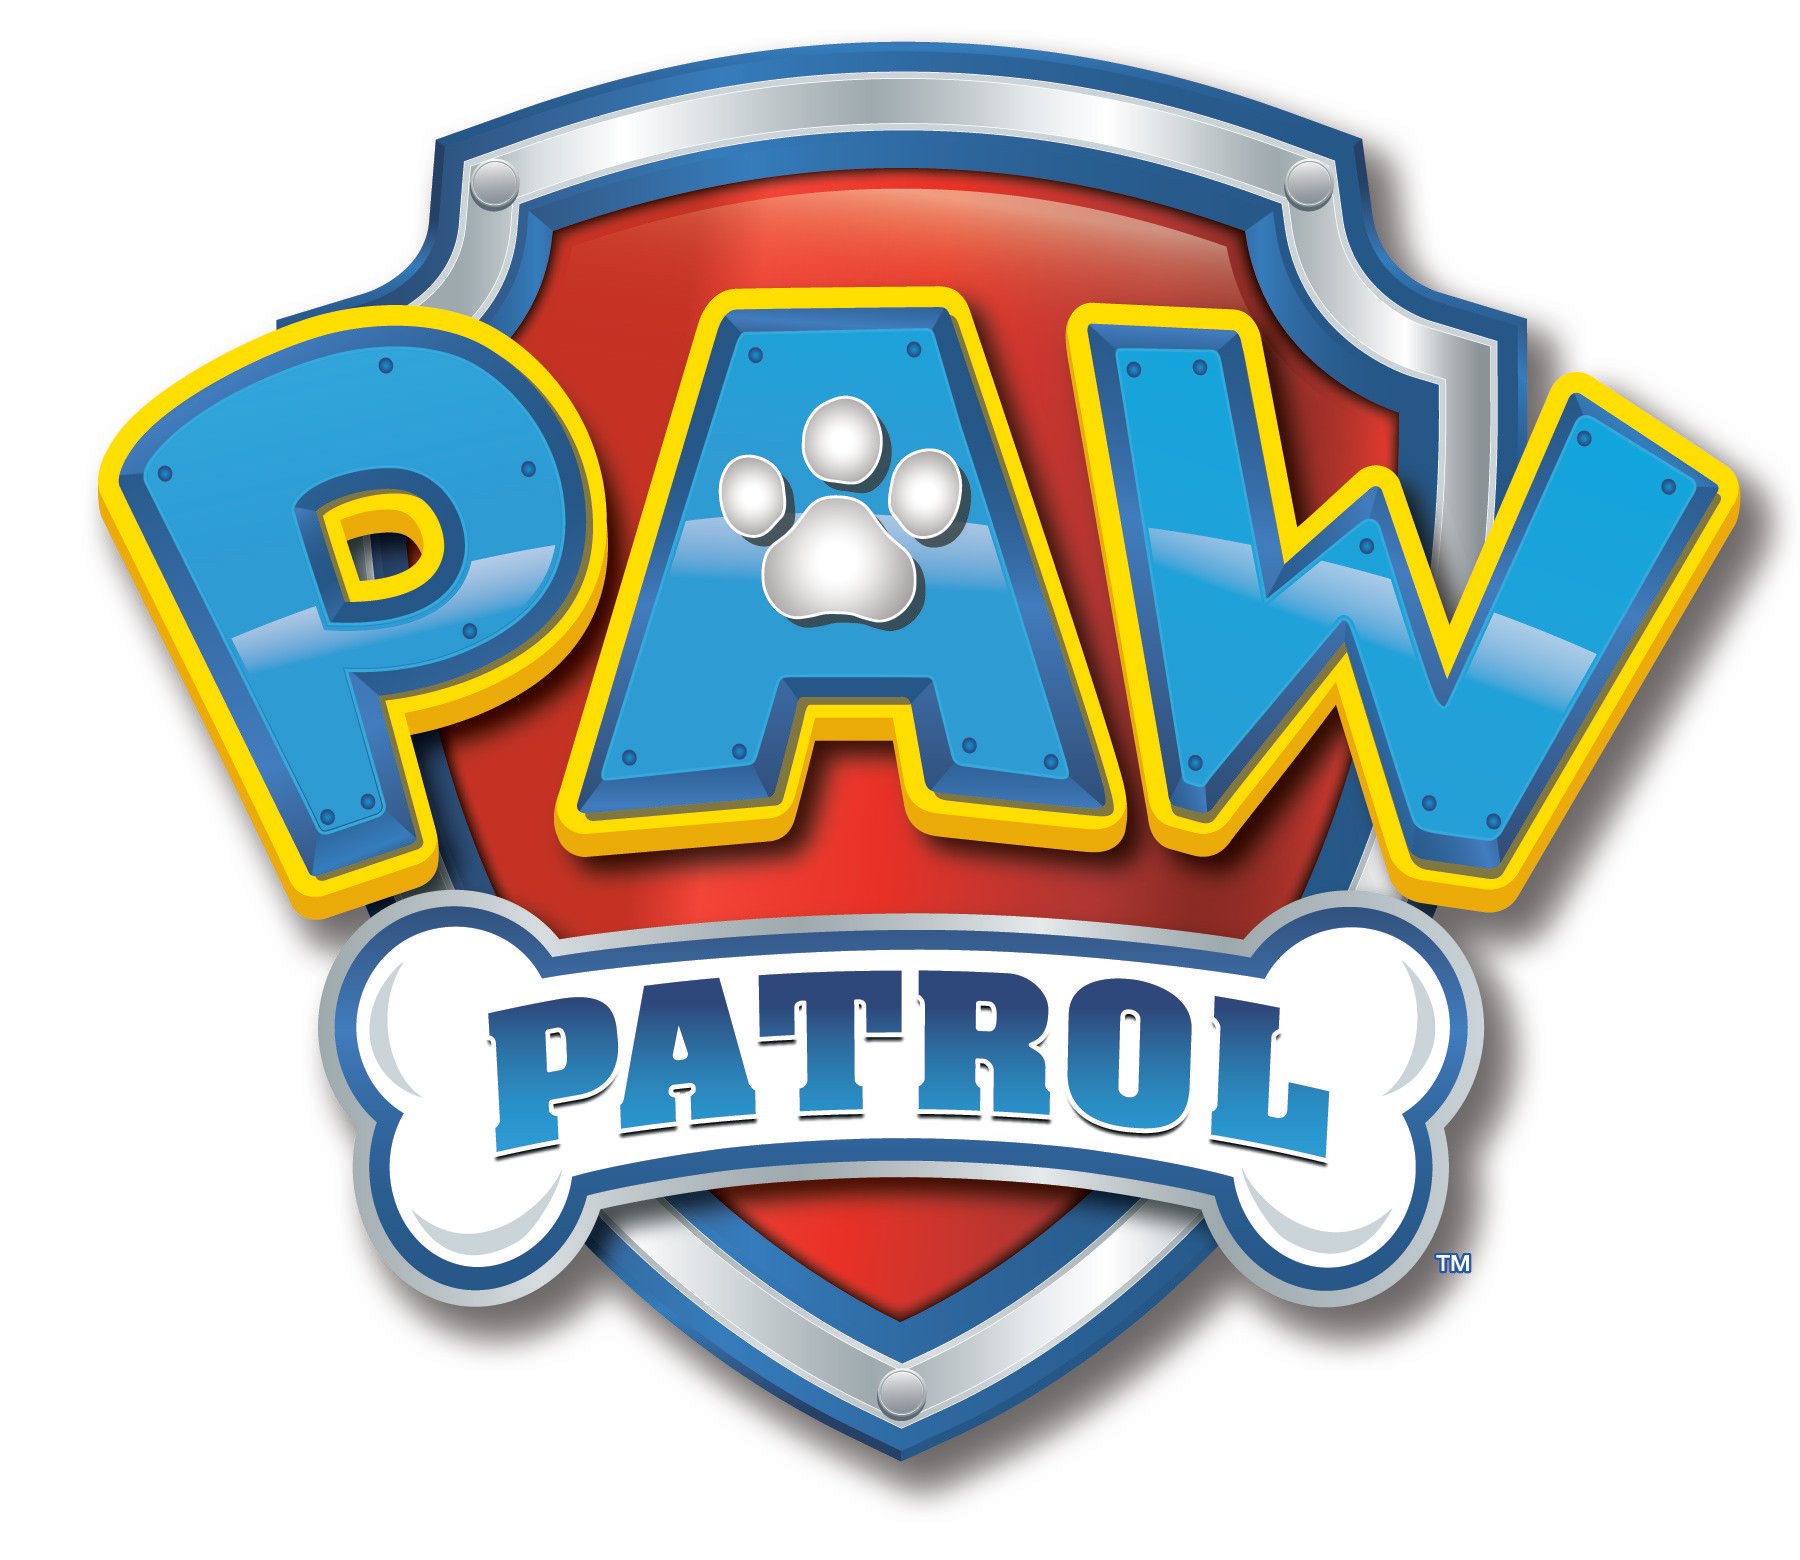 Paw patrol logo clipart abeonclipart .clipartix.com